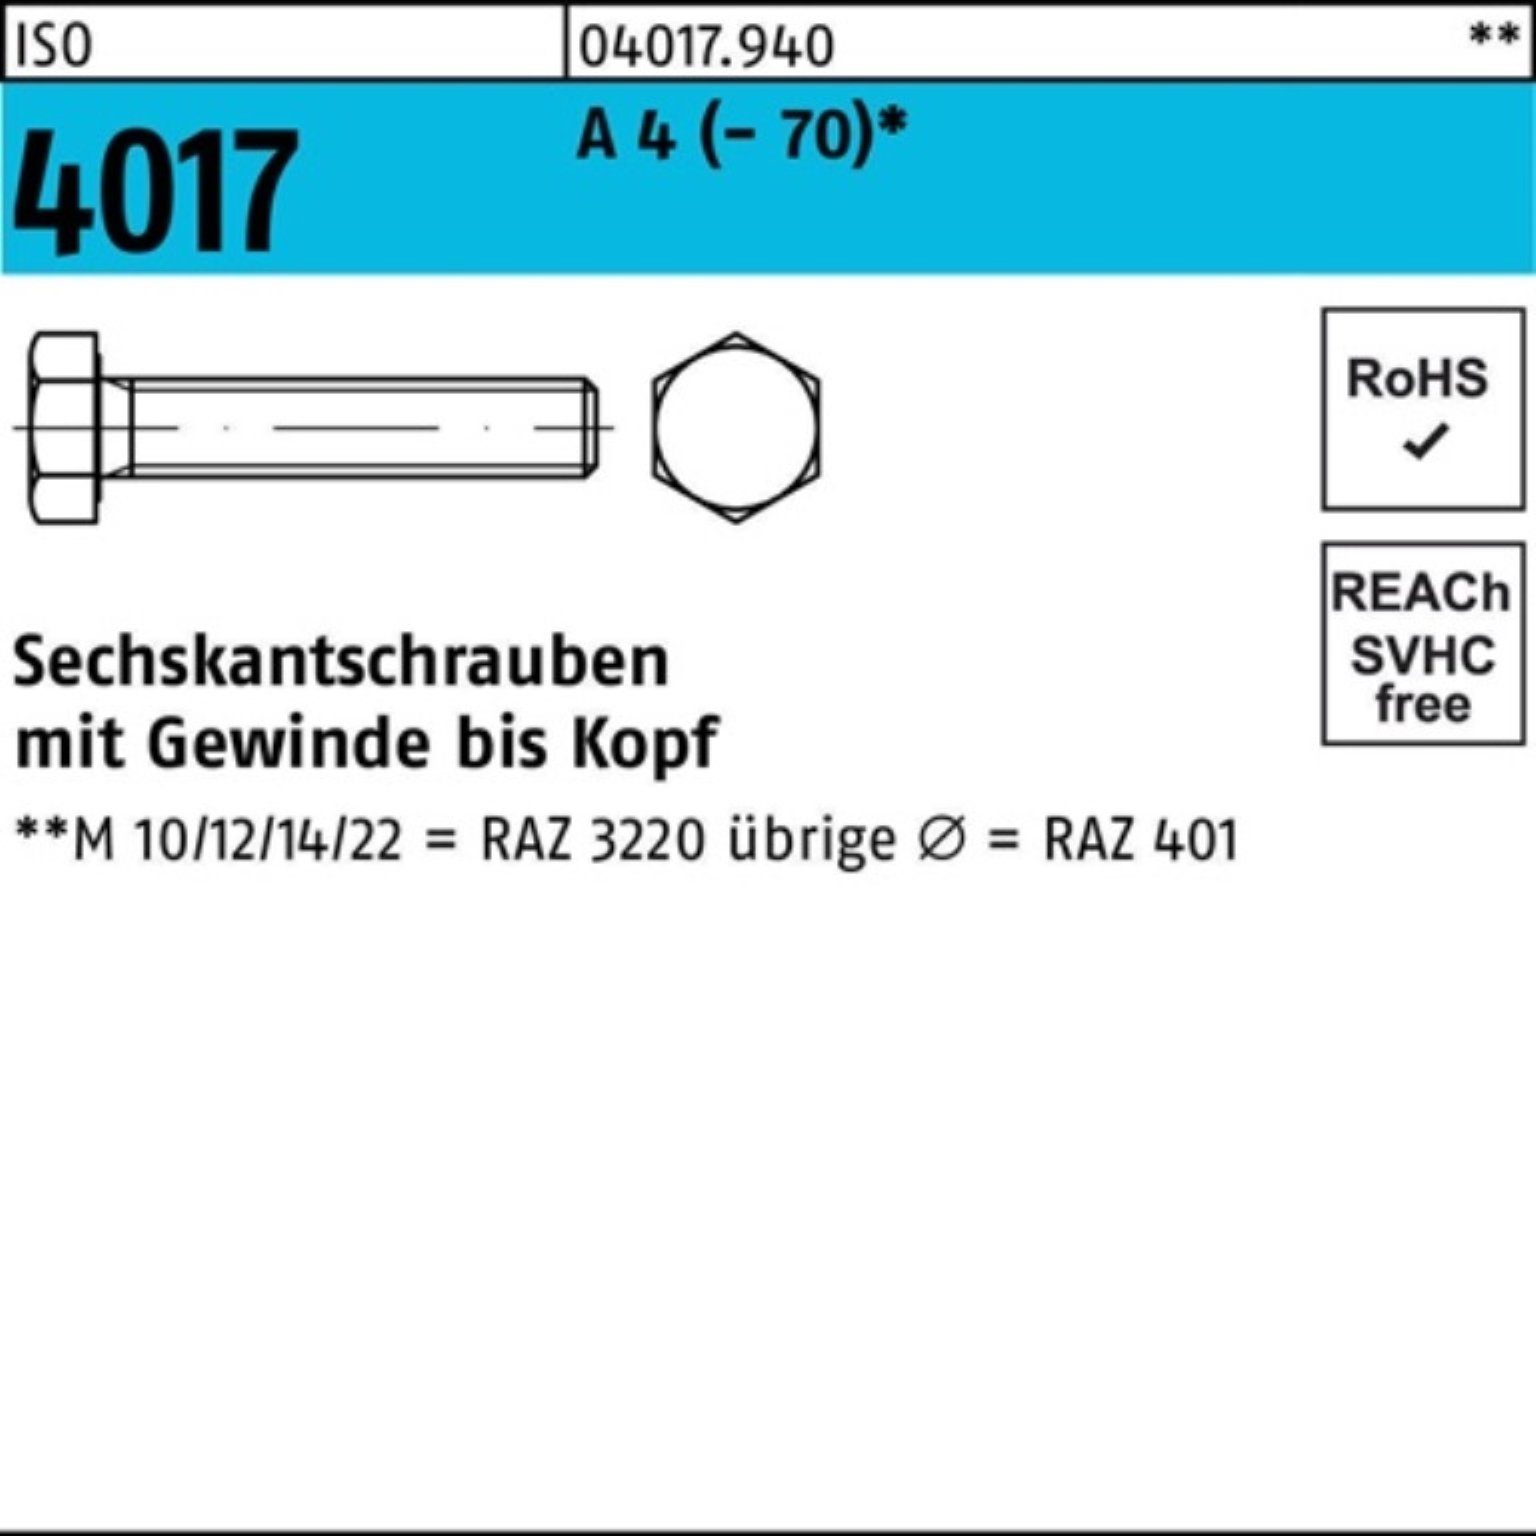 100er M30x Sechskantschraube Bufab 1 4017 Stück A 50 ISO VG 4017 ISO Sechskantschraube Pack 4